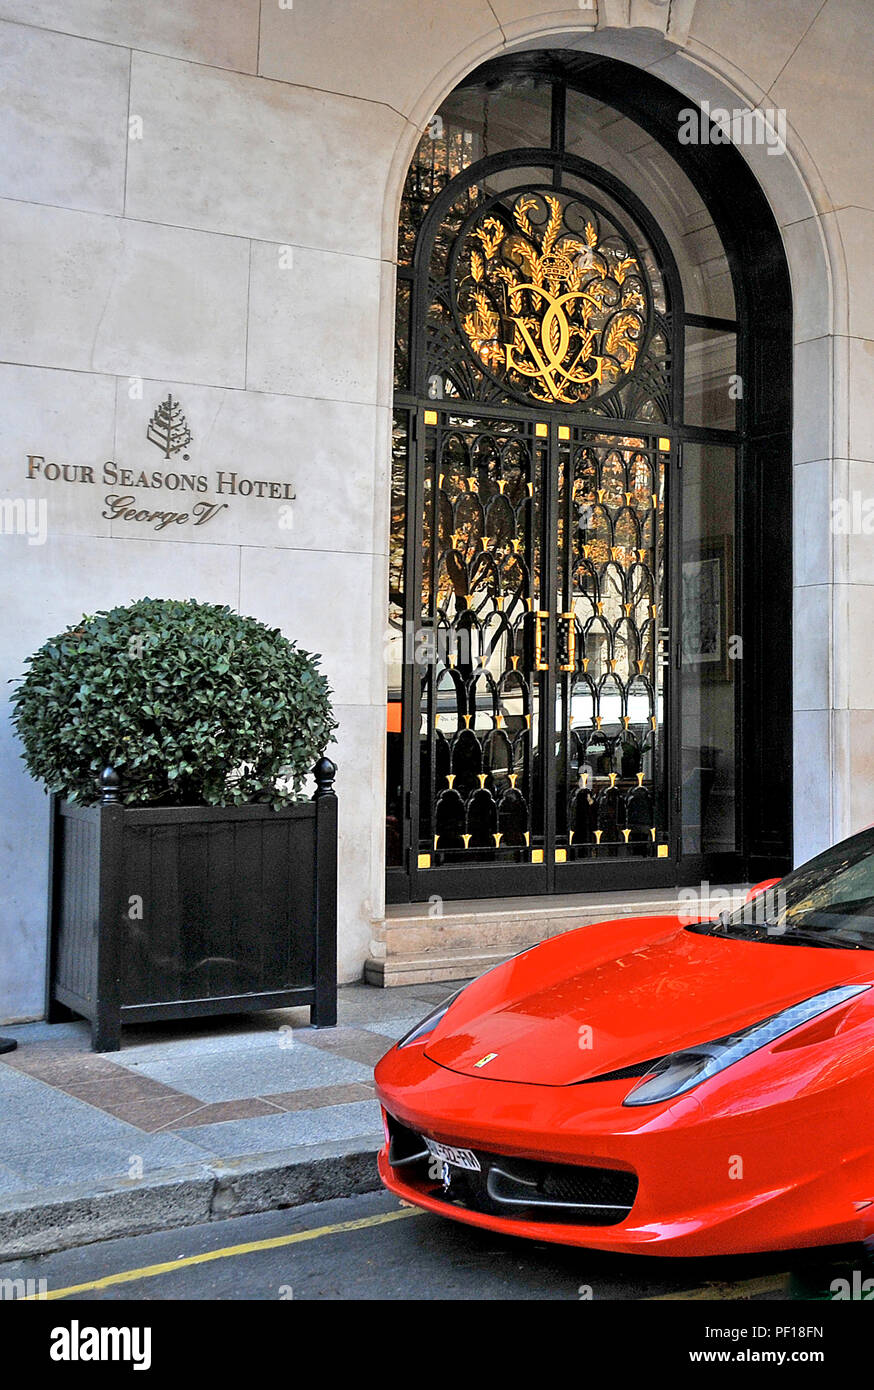 Quatre Saisons Geoge V palace hôtel et voiture Ferrari, Paris, France Banque D'Images